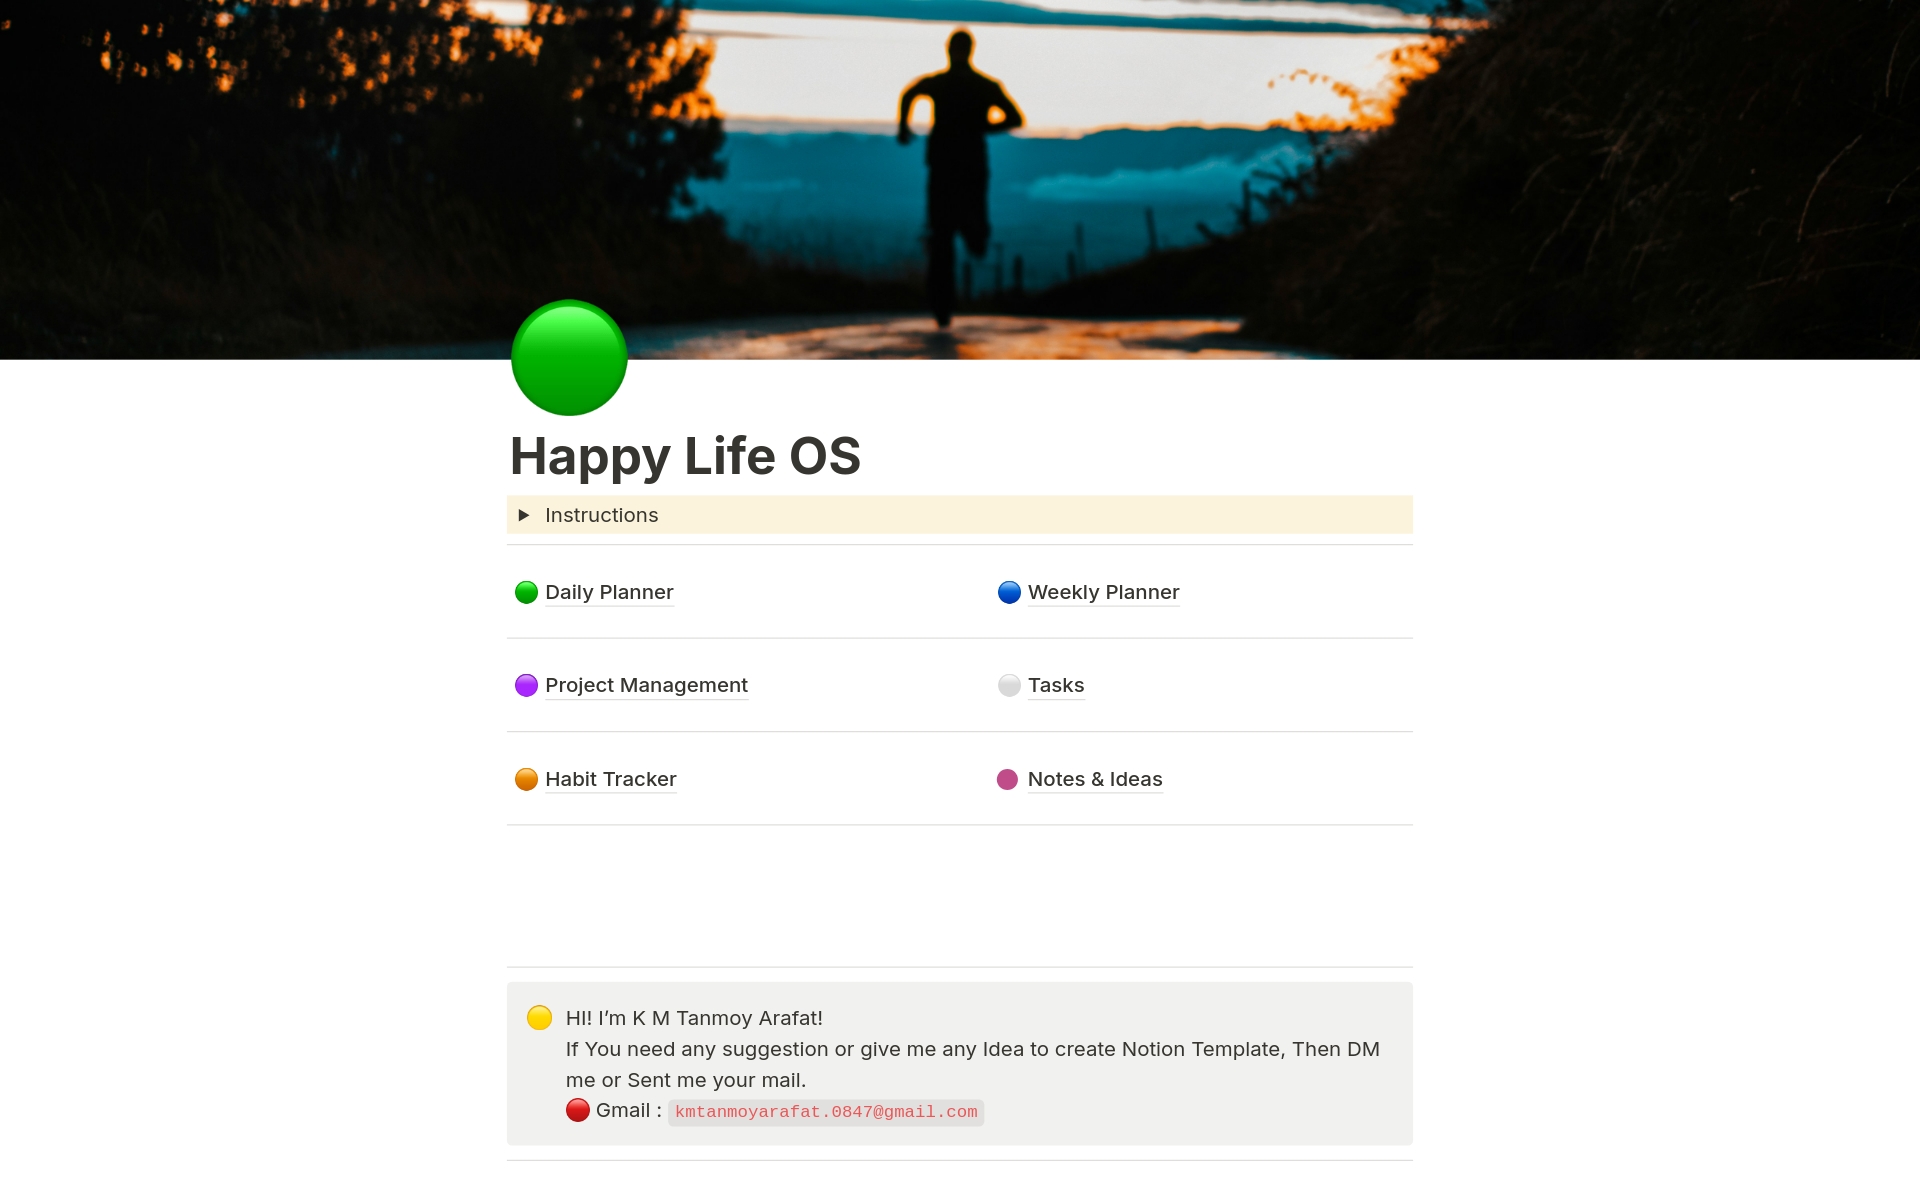 Vista previa de una plantilla para Happy Life OS